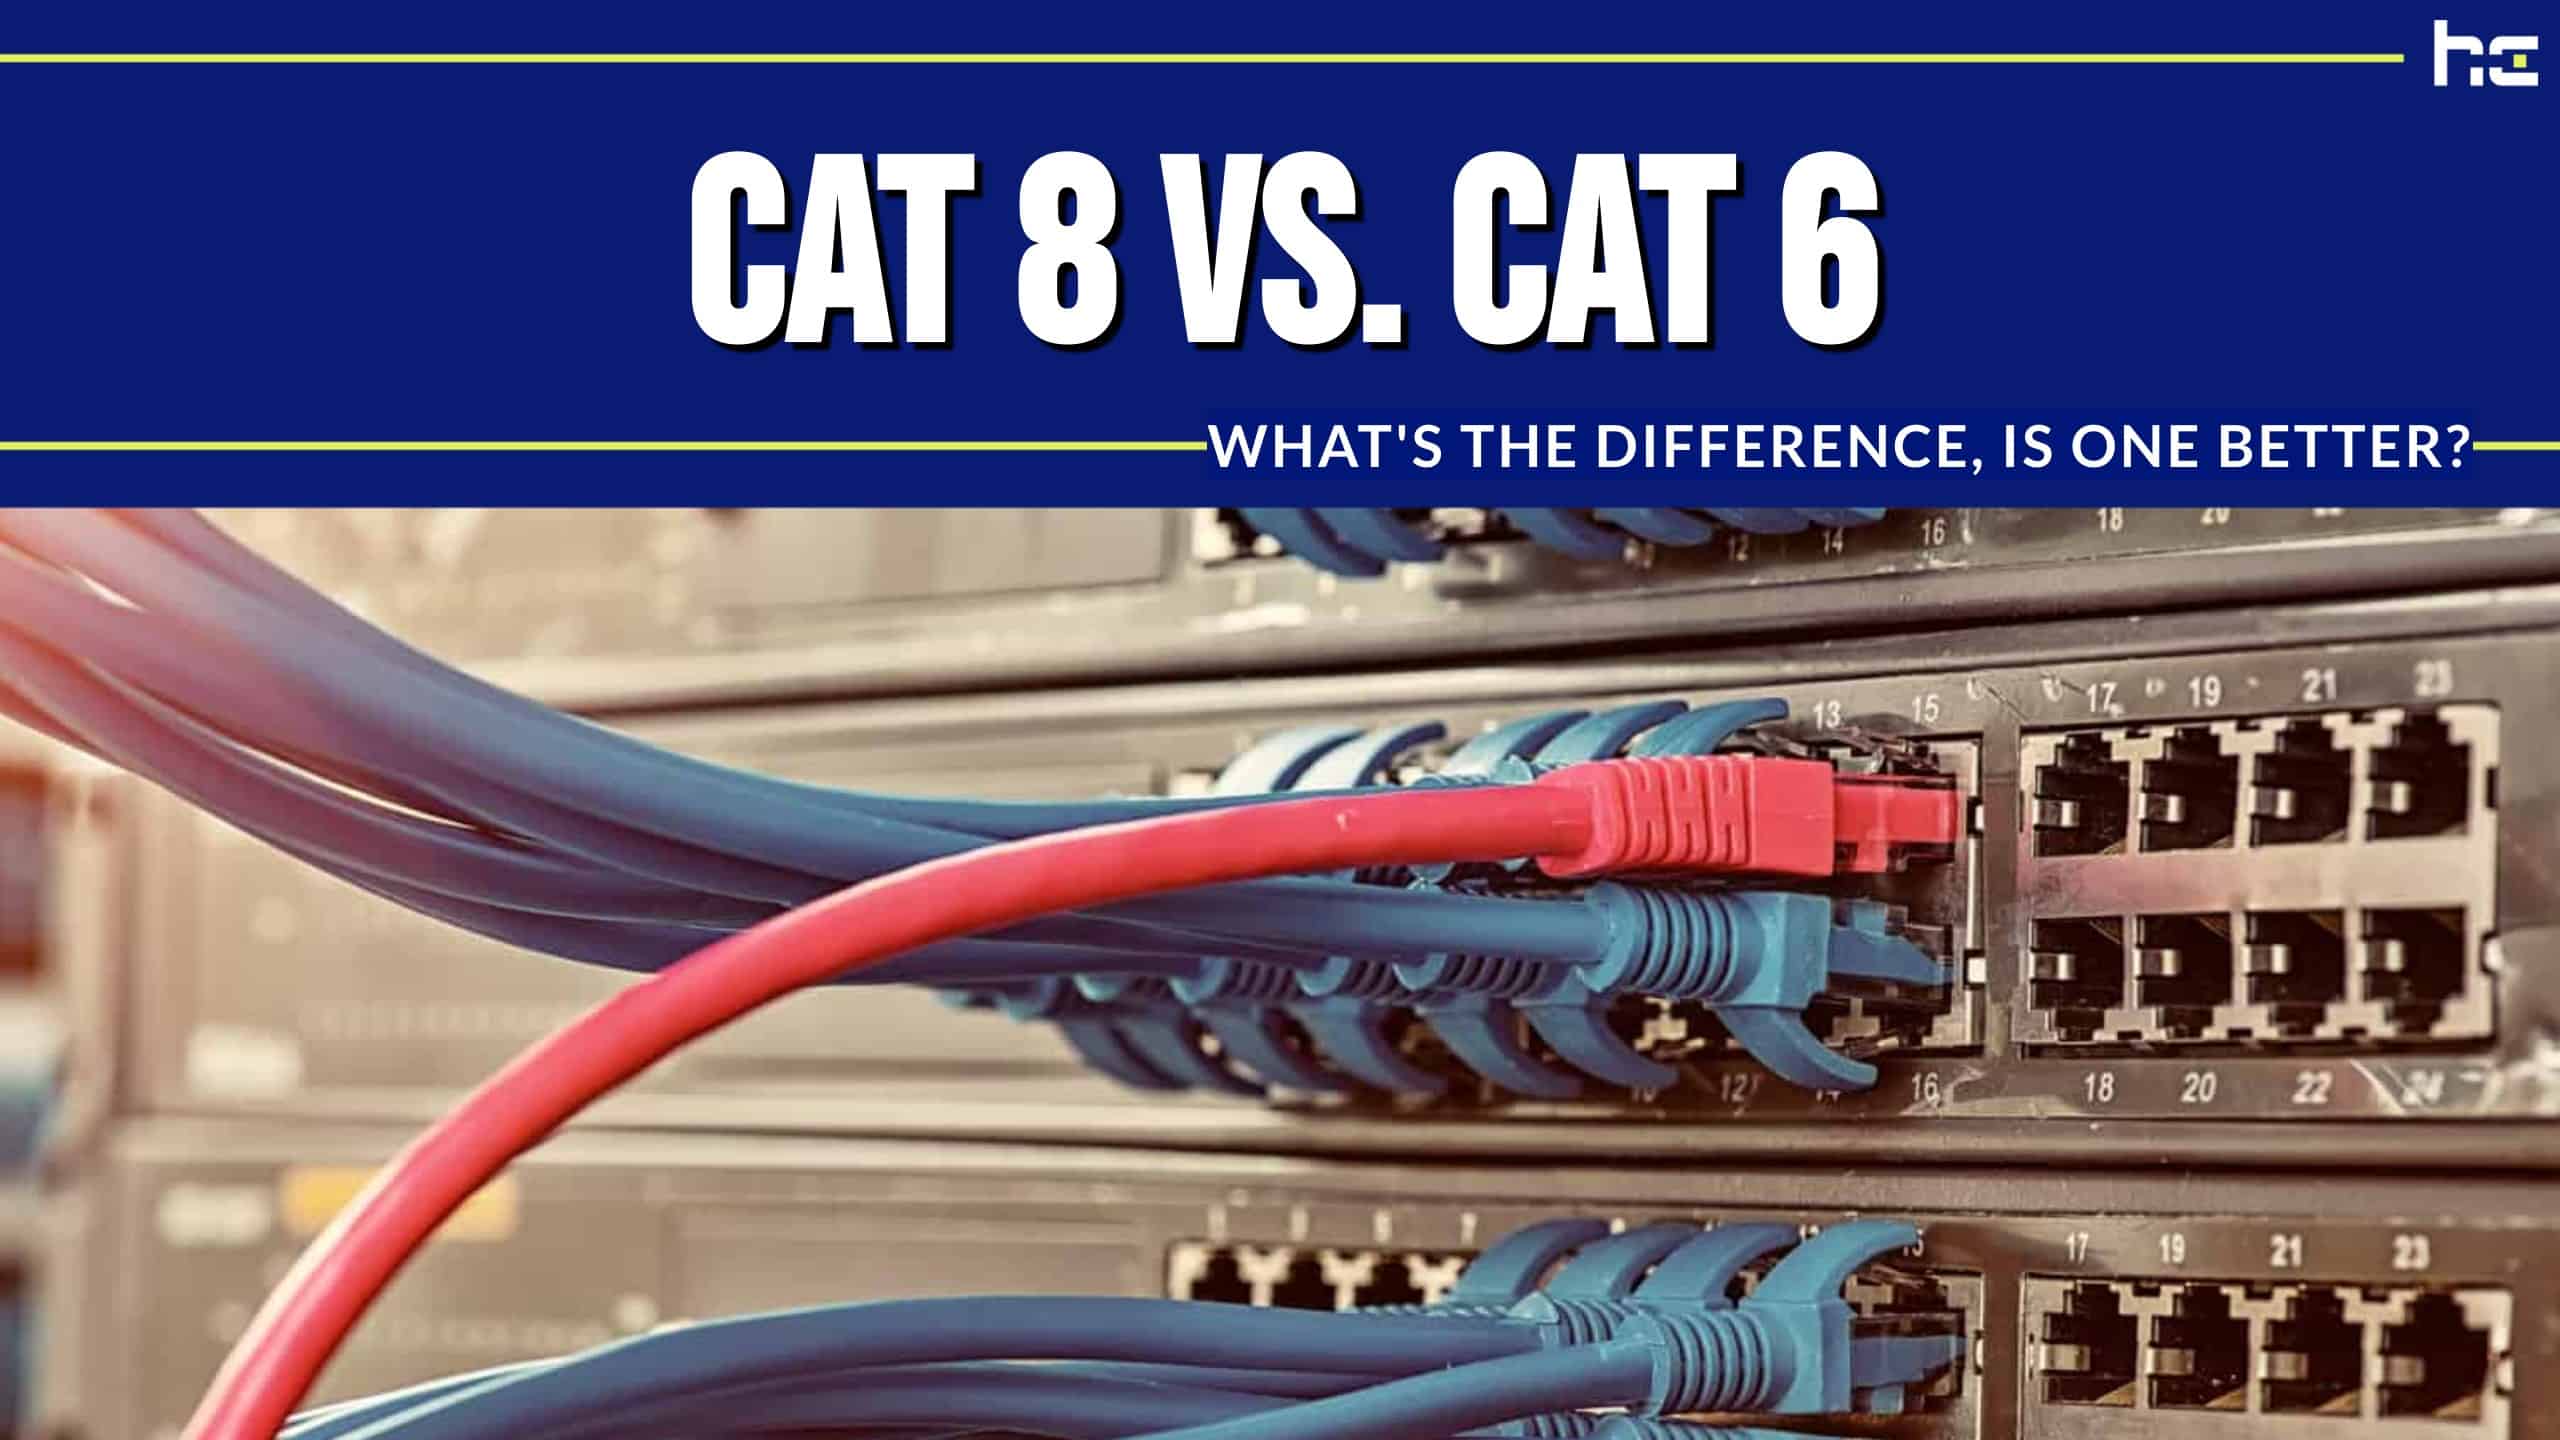 Cat 8 vs. Cat 6 infographic